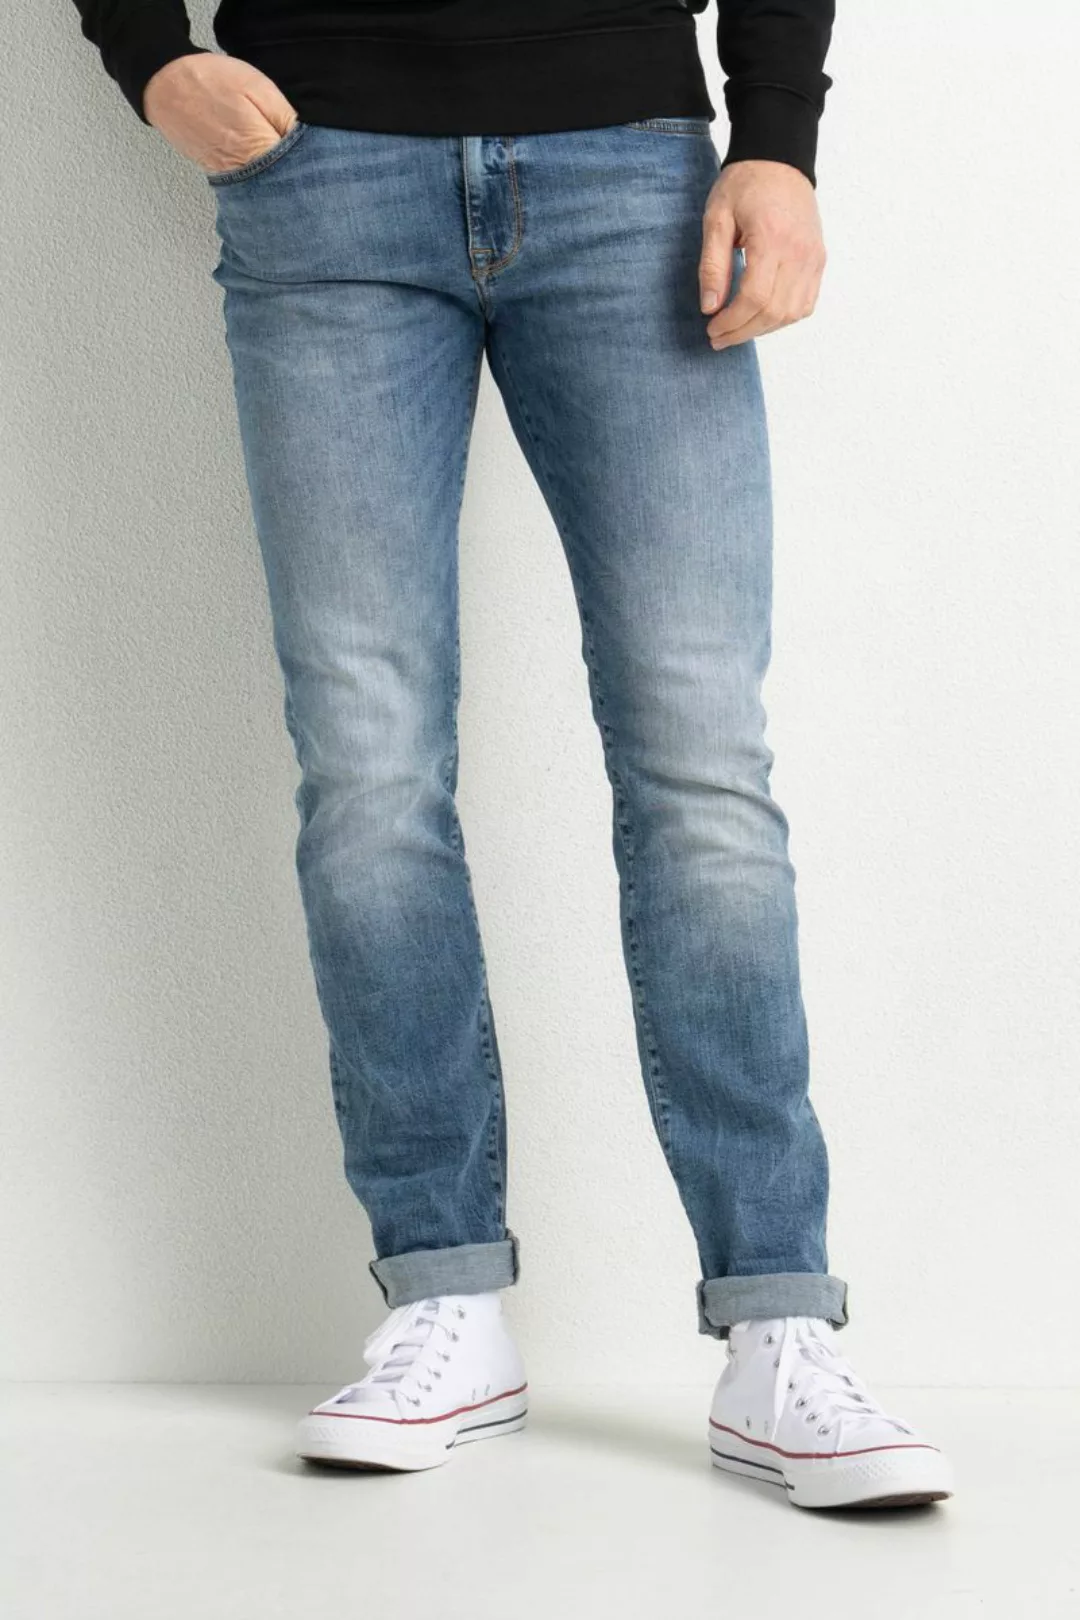 Petrol Seaham Jeans Indigo Blue - Größe W 31 - L 34 günstig online kaufen